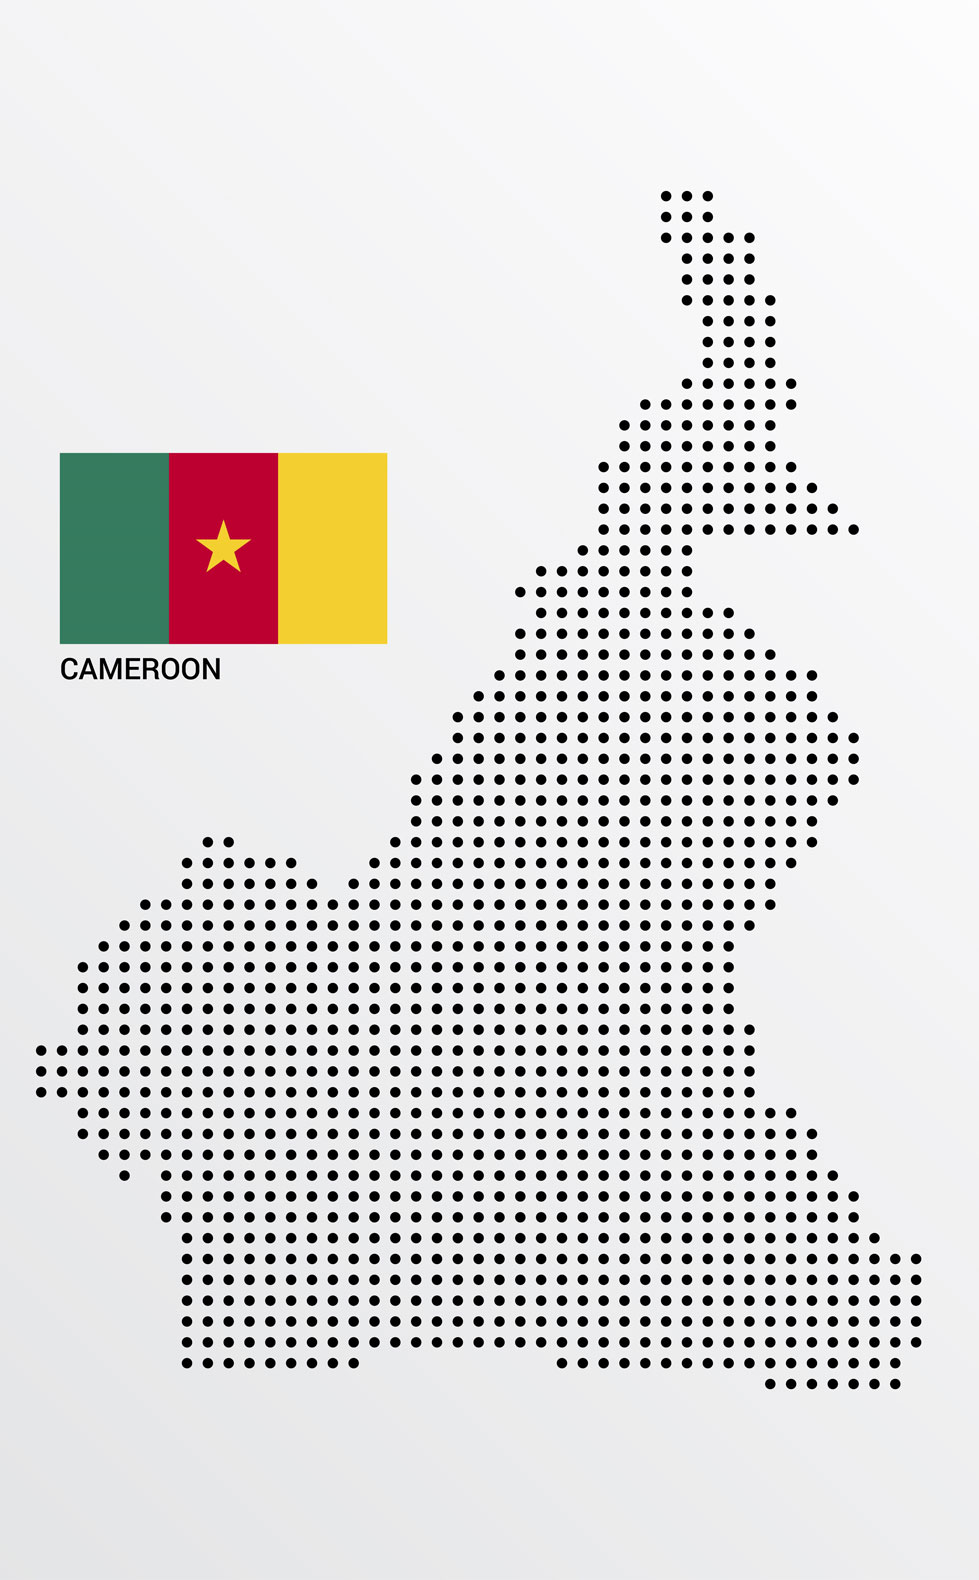 روش و راه ها و انواع ثبت شرکت در کامرون Registering company in cameroon